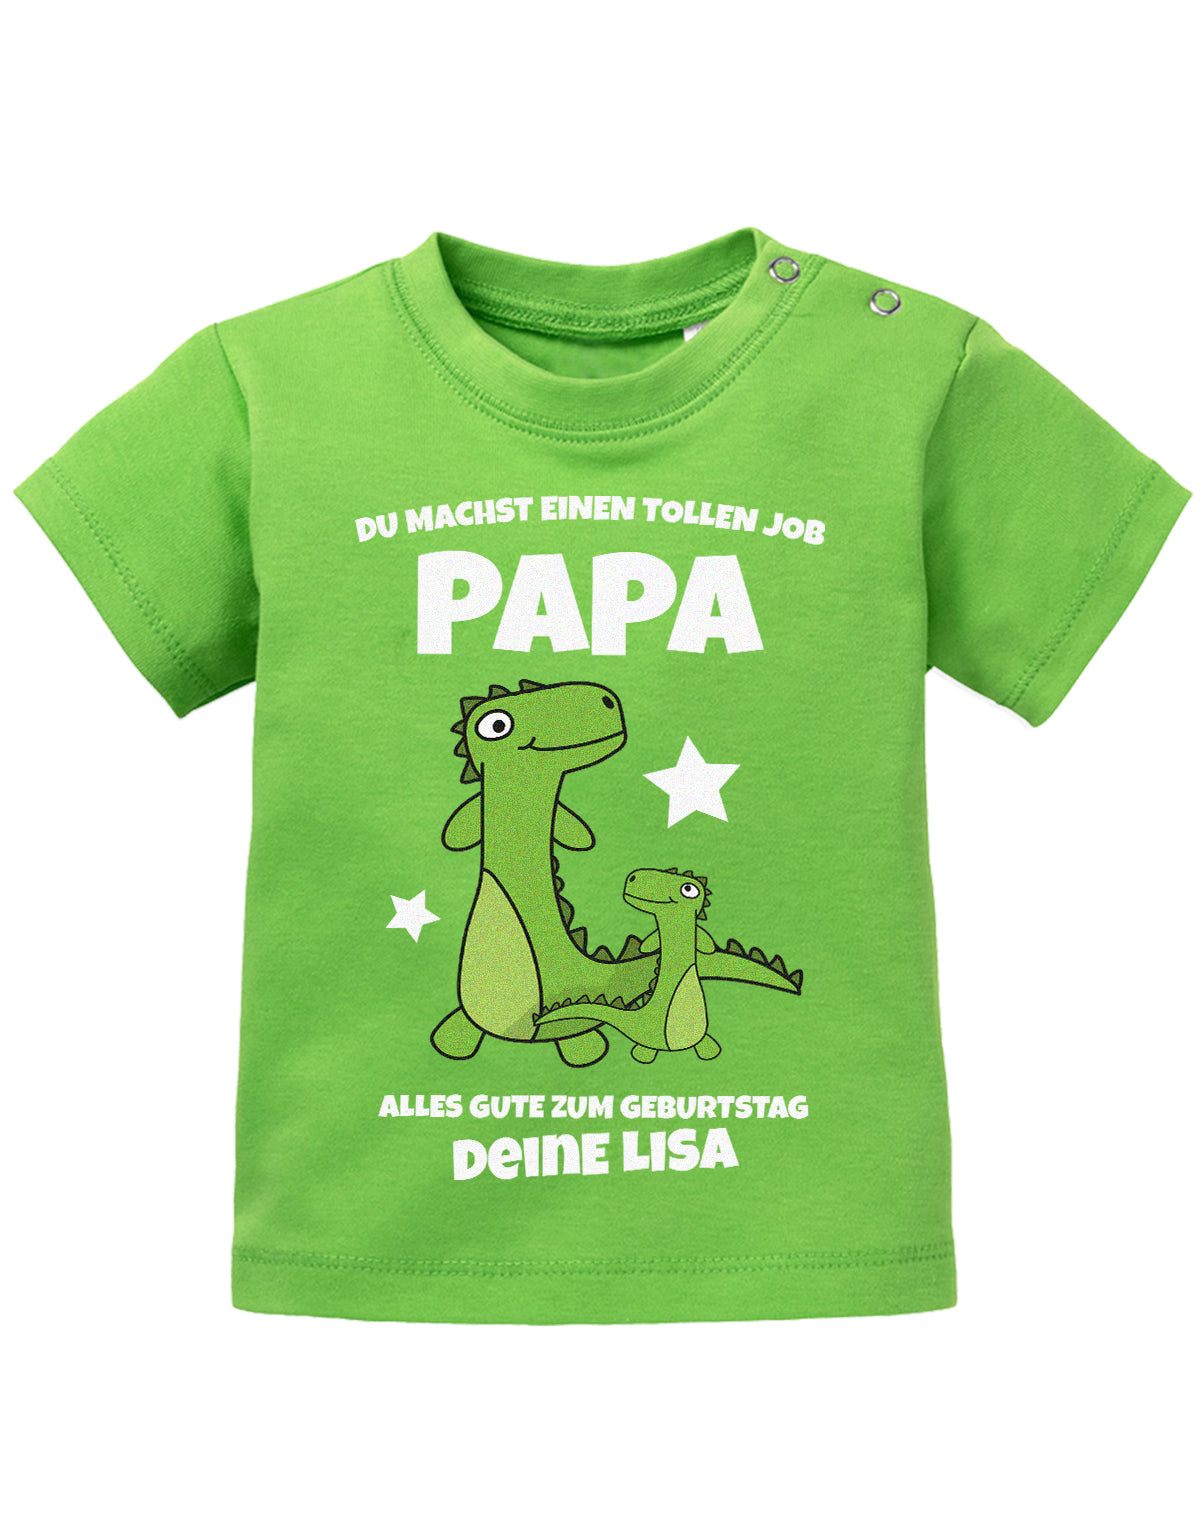 Papa Spruch Baby Shirt. Du machst einen tollen Job, Papa. Alles Gute zum Geburtstag. Personalisiert mit Namen. Grün